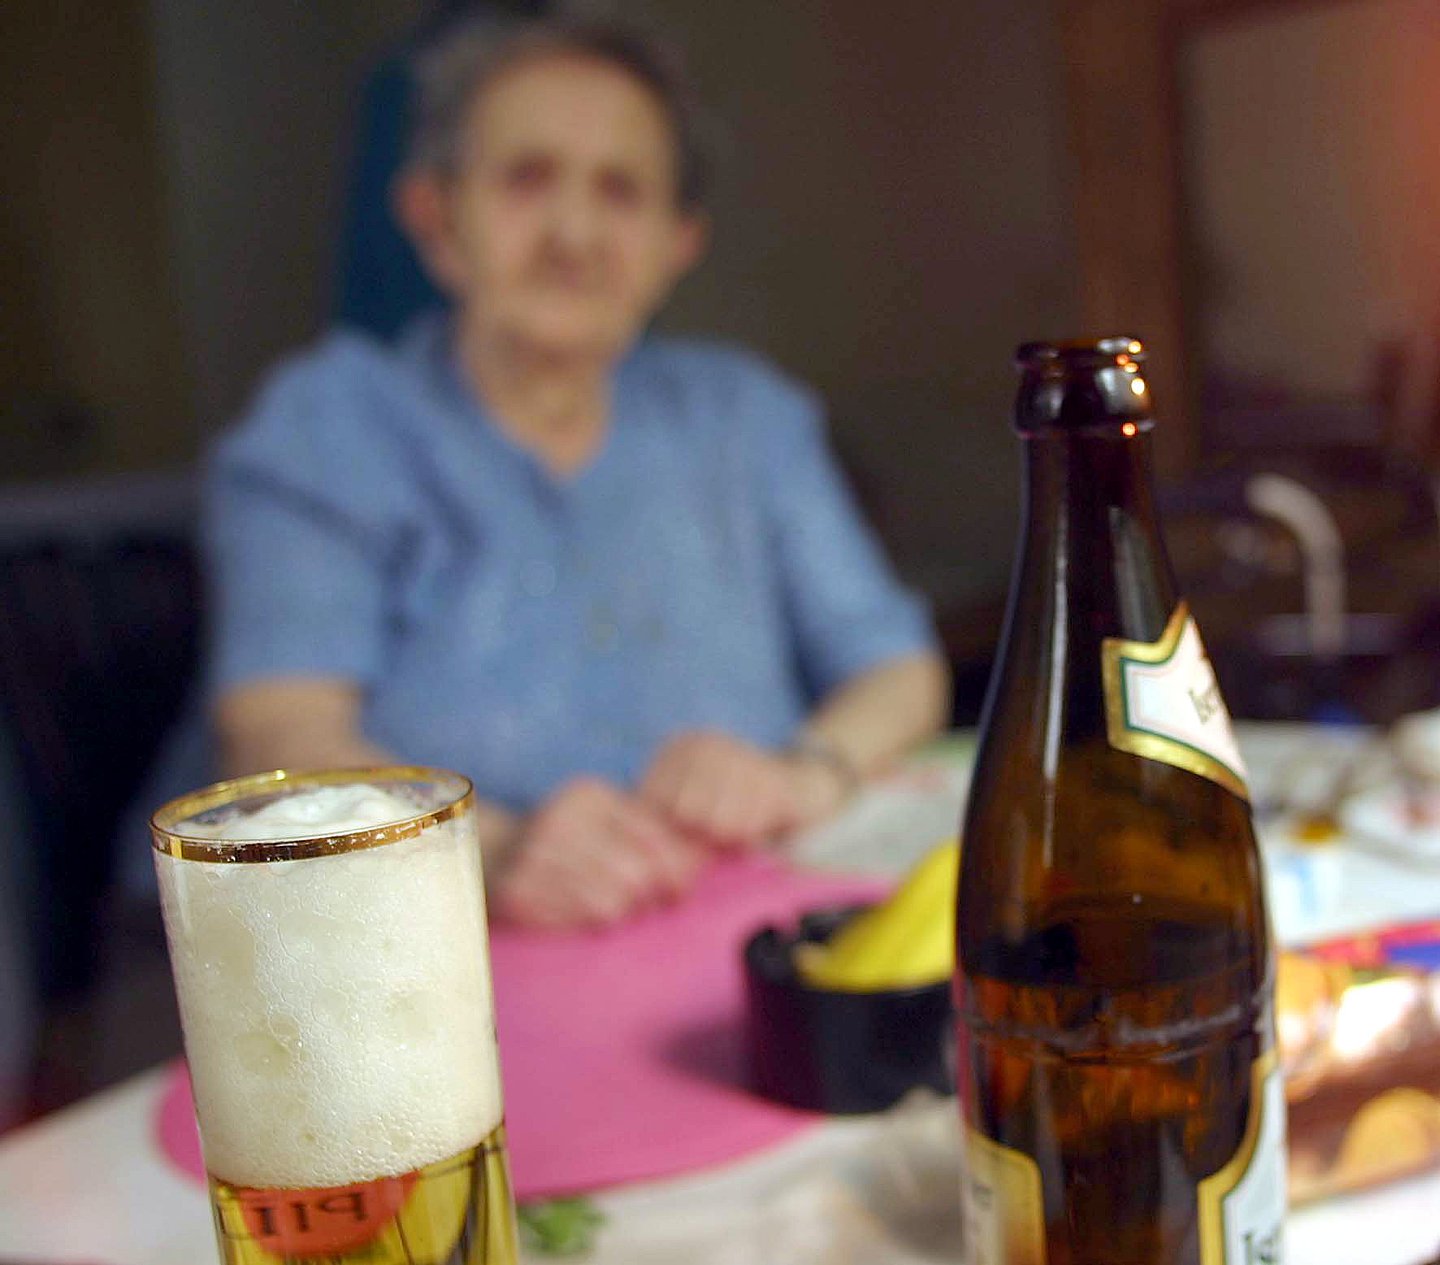 Foto: Am Tisch sitzt eine ältere Frau. Vor ihr steht eine Flasche und ein Glas Bier.